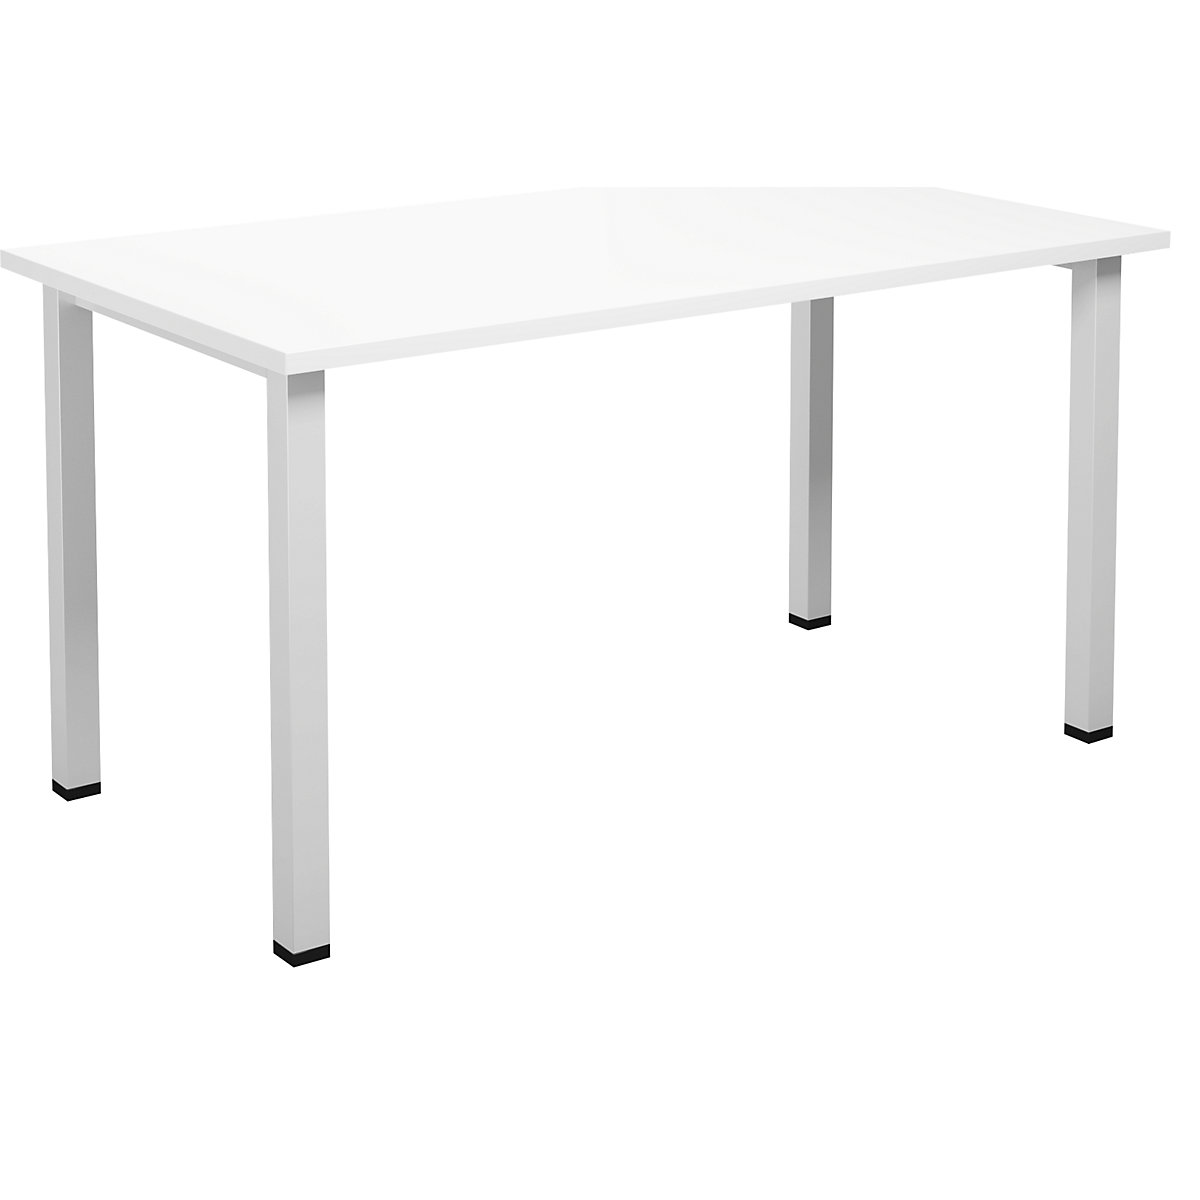 DUO-U multi-purpose desk, straight tabletop, WxD 1400 x 800 mm, white, white-12